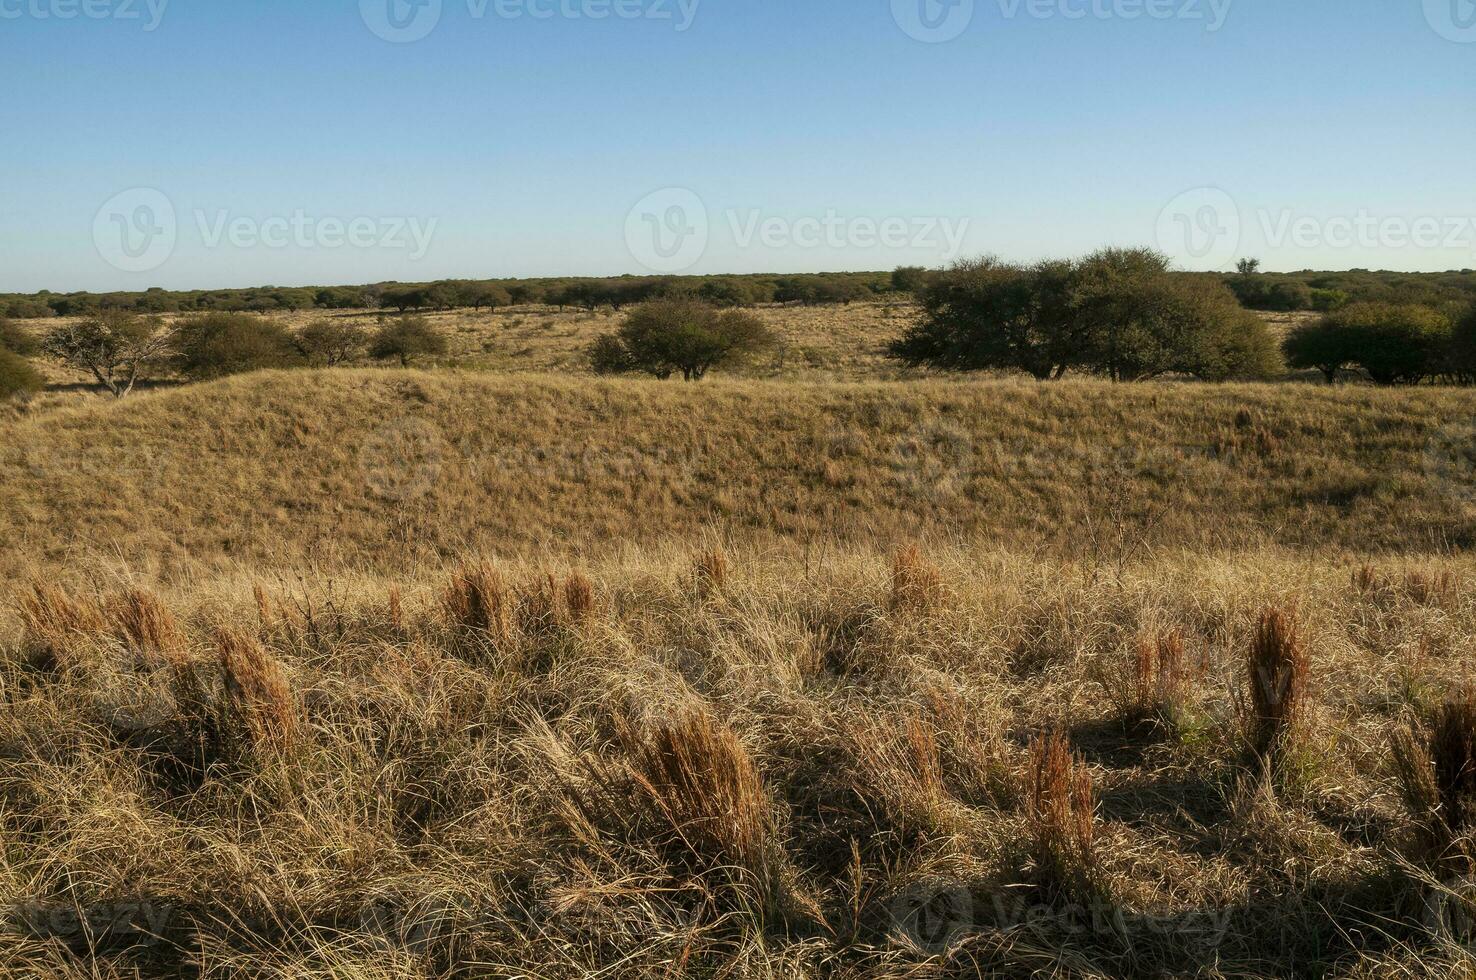 pampa erba paesaggio, la pampa Provincia, patagonia, argentina. foto